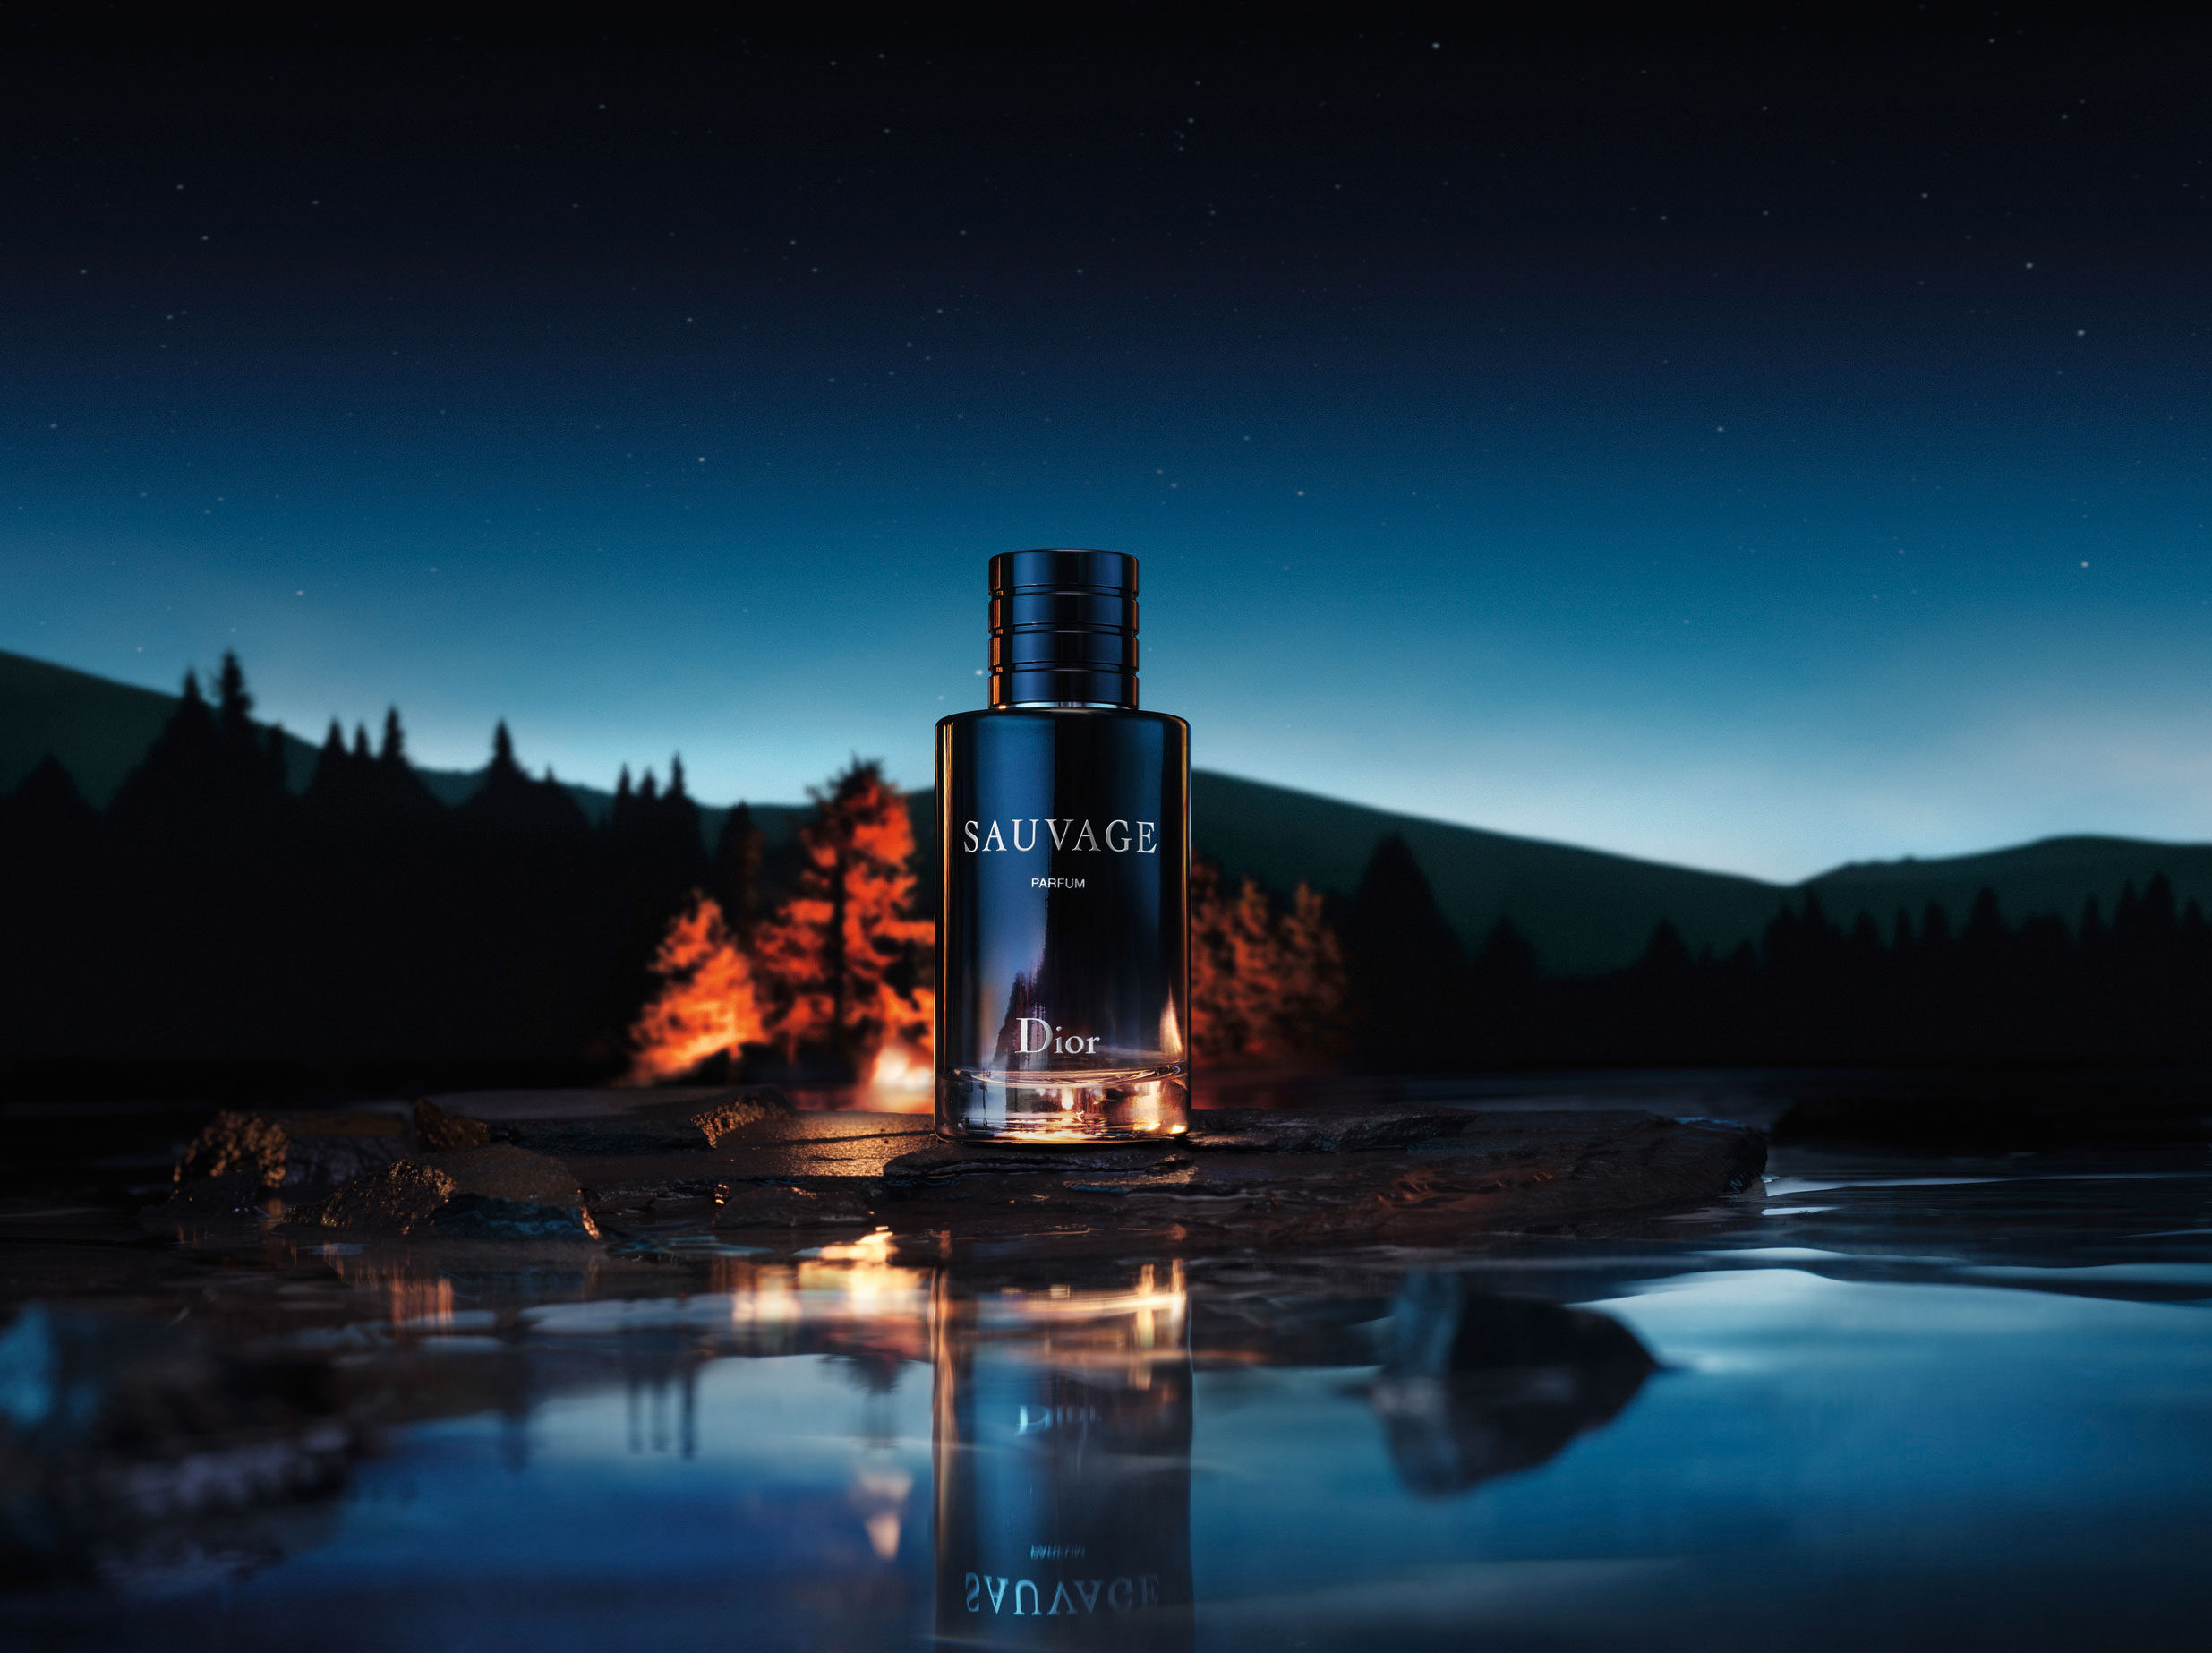 sauvage parfum 2019